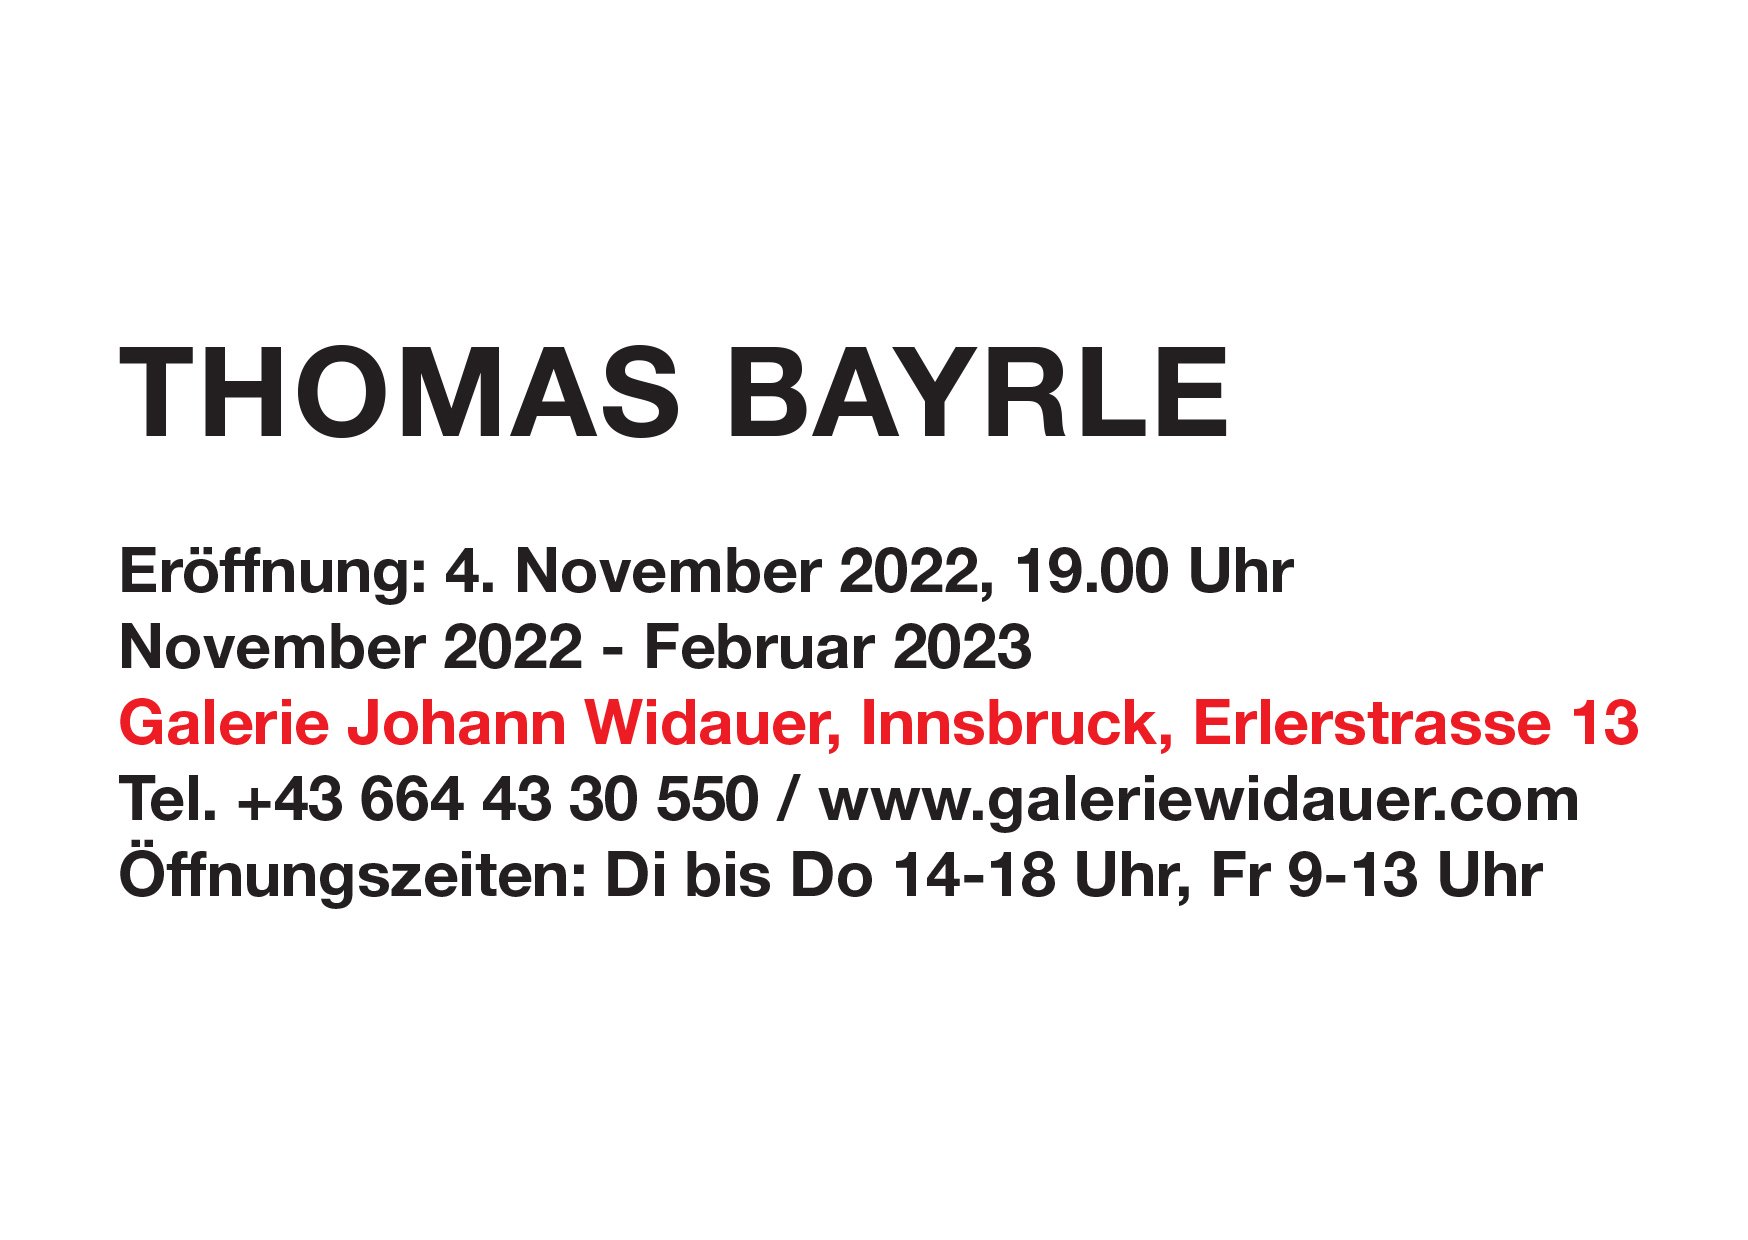 2022_Exh_06_Galerie-Johann-Widauer_Thomas-Bayrle_Innsbruck-Einladungskarte2022_Exh_06_Galerie-Johann-Widauer_Thomas-Bayrle_Innsbruck-Einladungskarte.jpg